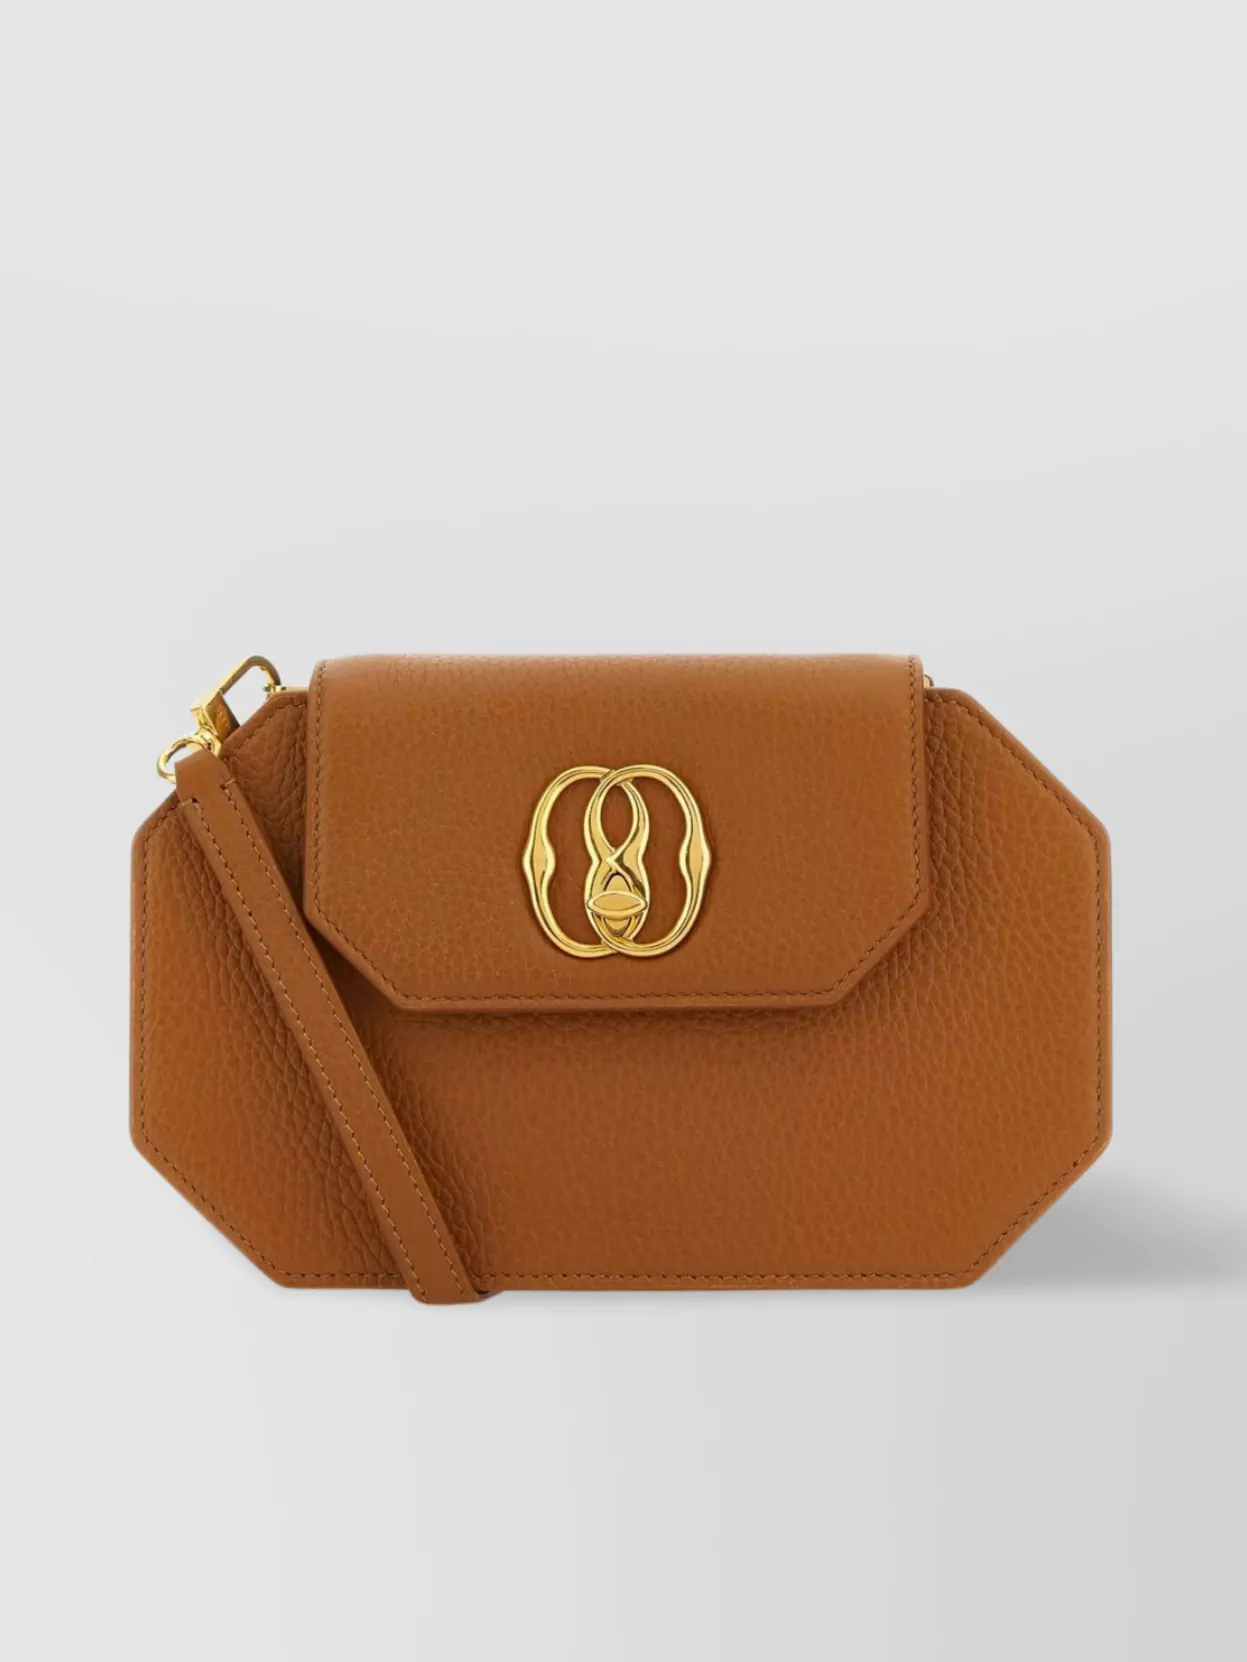 Bally Leather Octagon Emblem Shoulder Bag In Brown